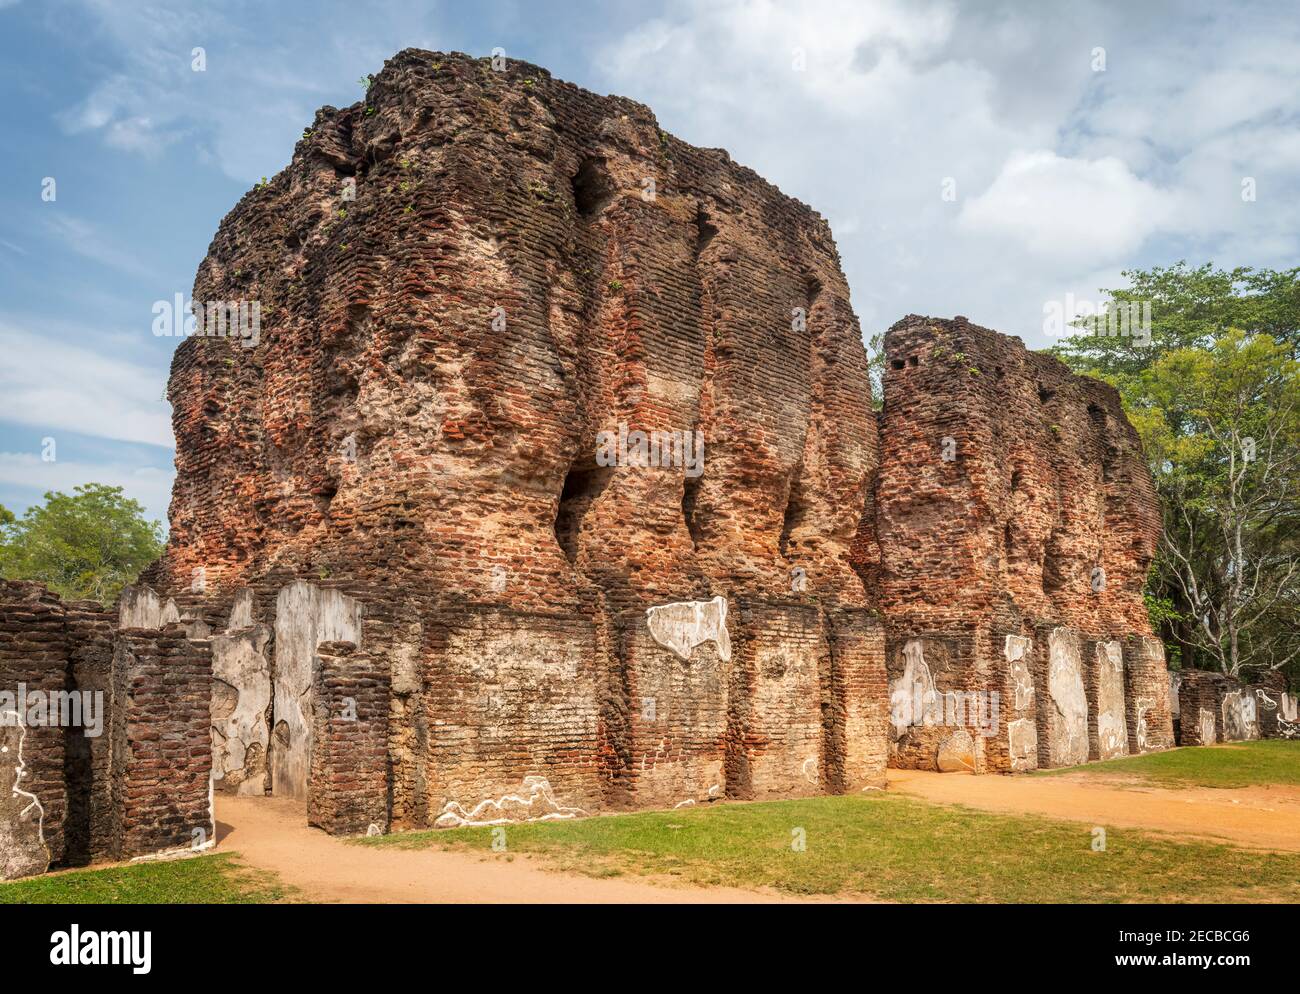 Vijayanta Prasada - der Königspalast von König Parakramabahu, dem größten König der Polonnaruwa-Zeit. Vijayanta Prasada hatte einmal sieben Geschichten, fou Stockfoto